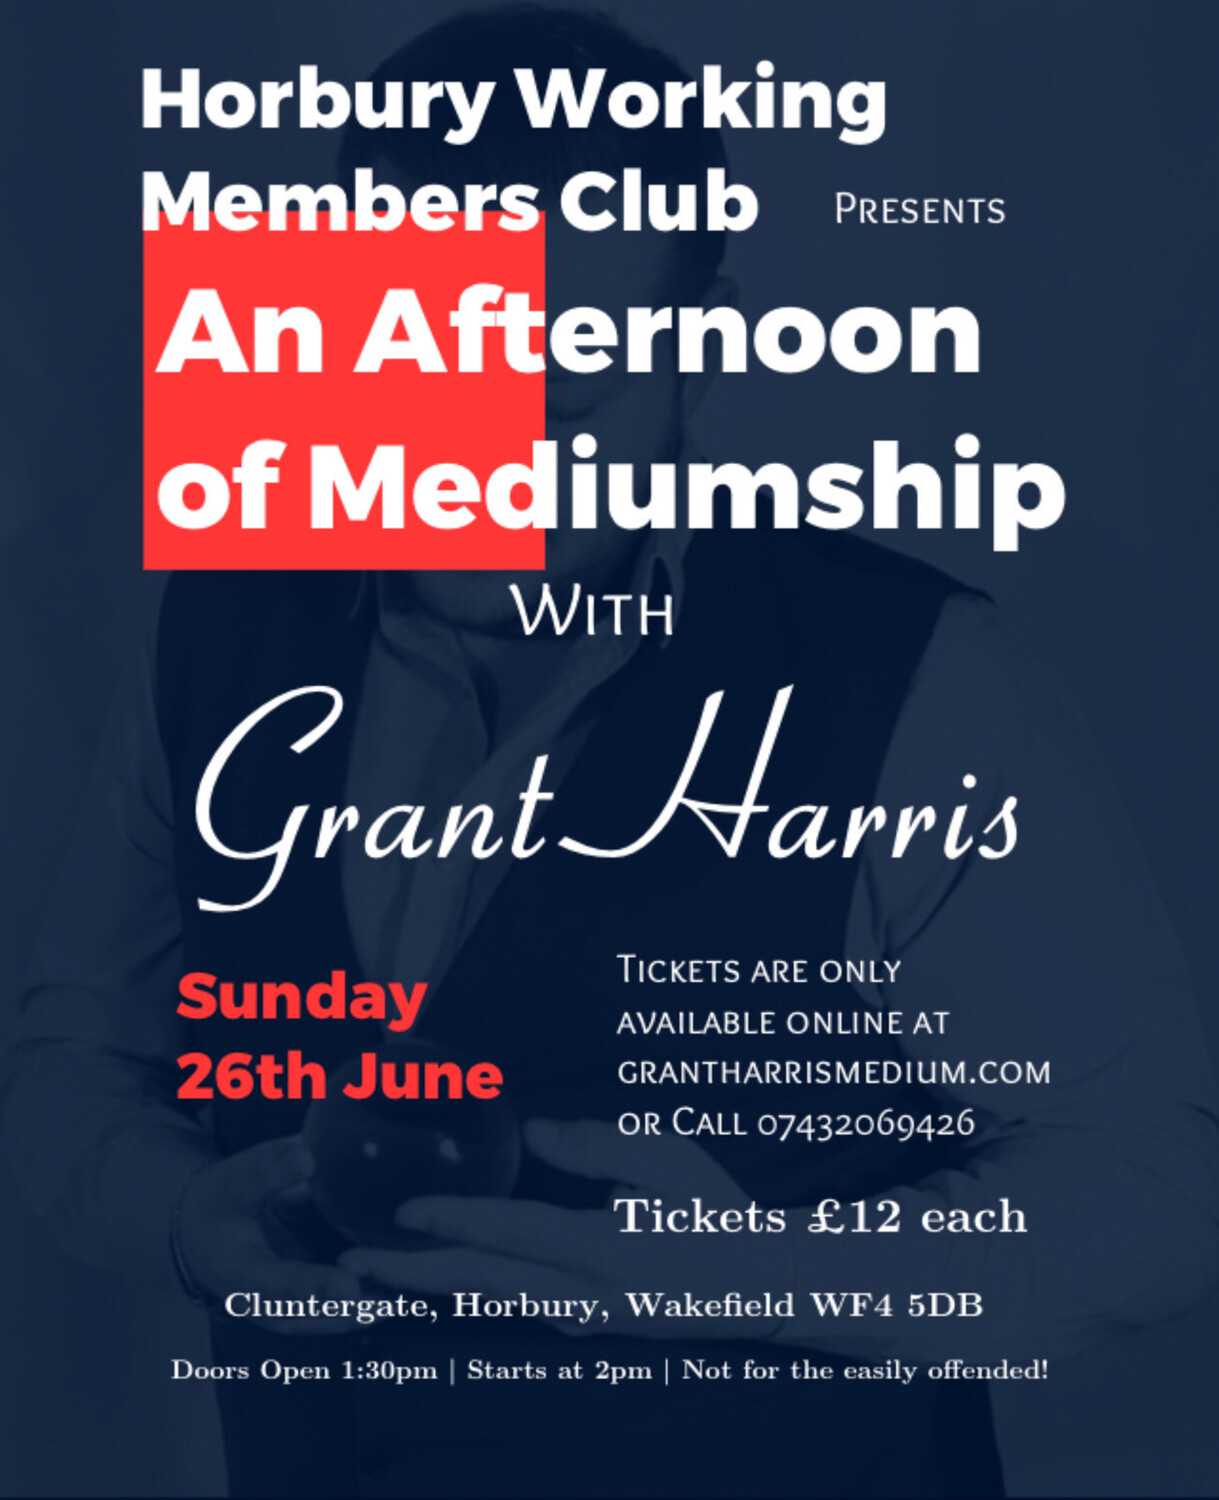 Afternoon of Mediumship, Horbury Working Members Club, Sun 26th June 2022